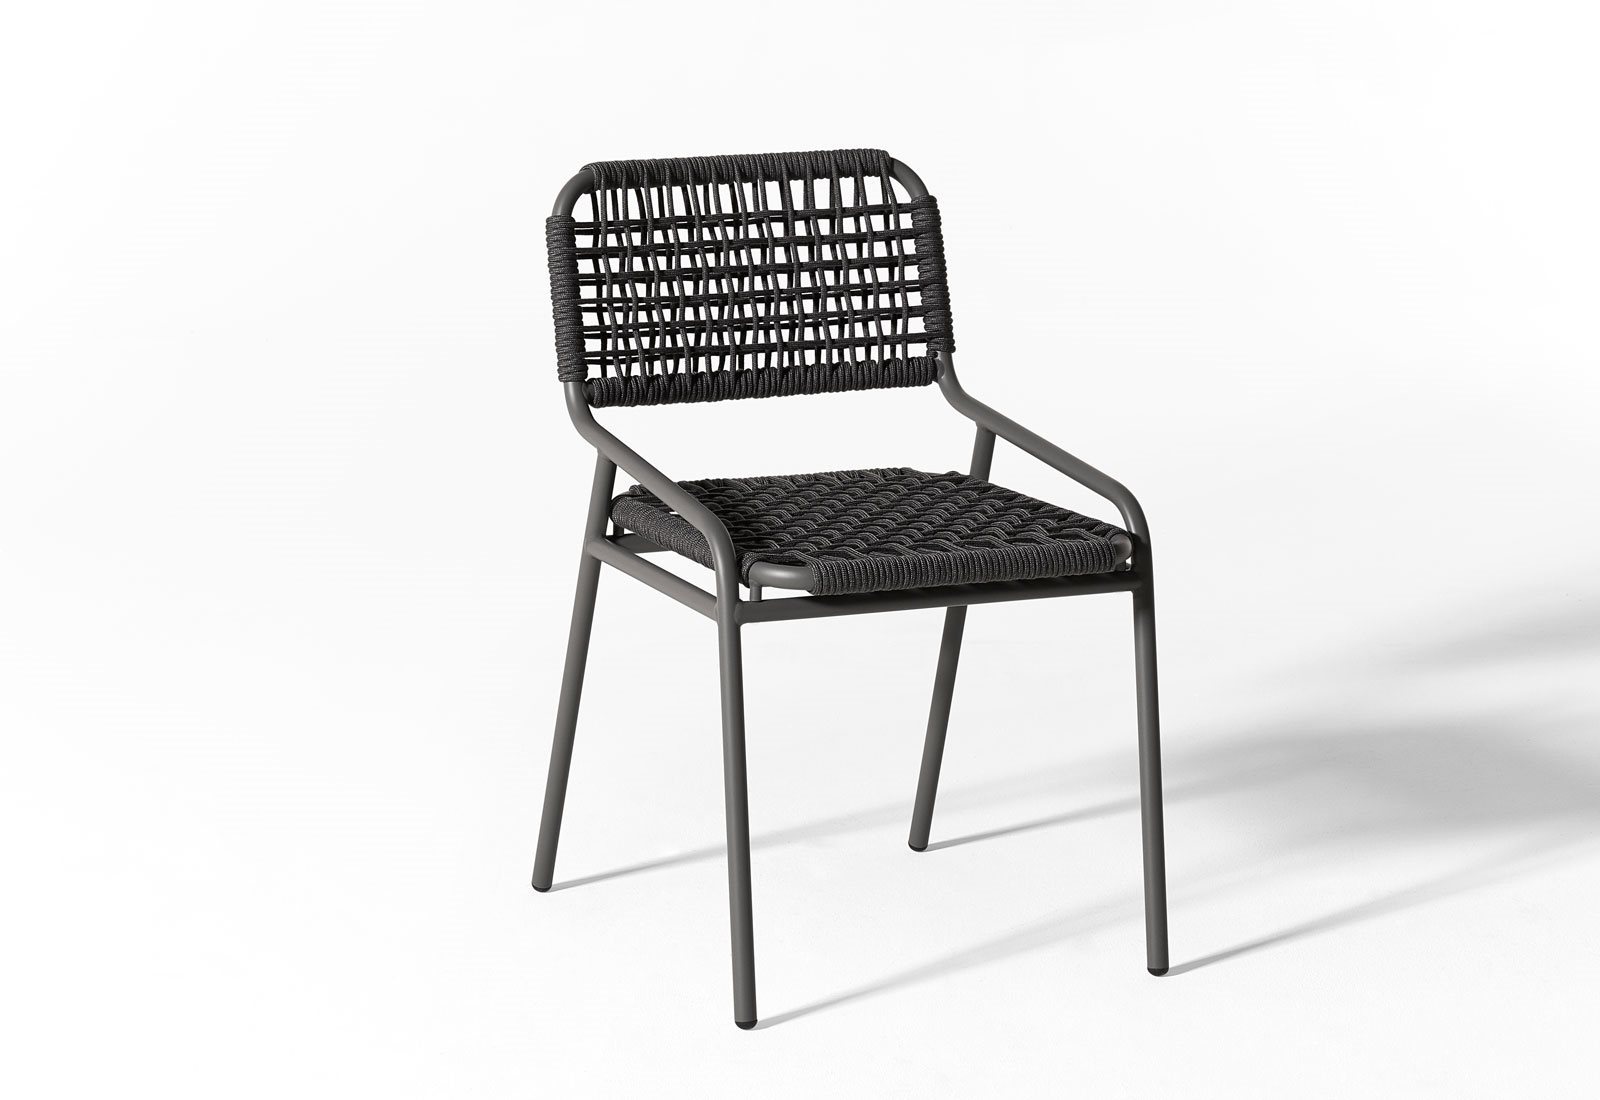 Tai-open-air-chair-04-1600x1100